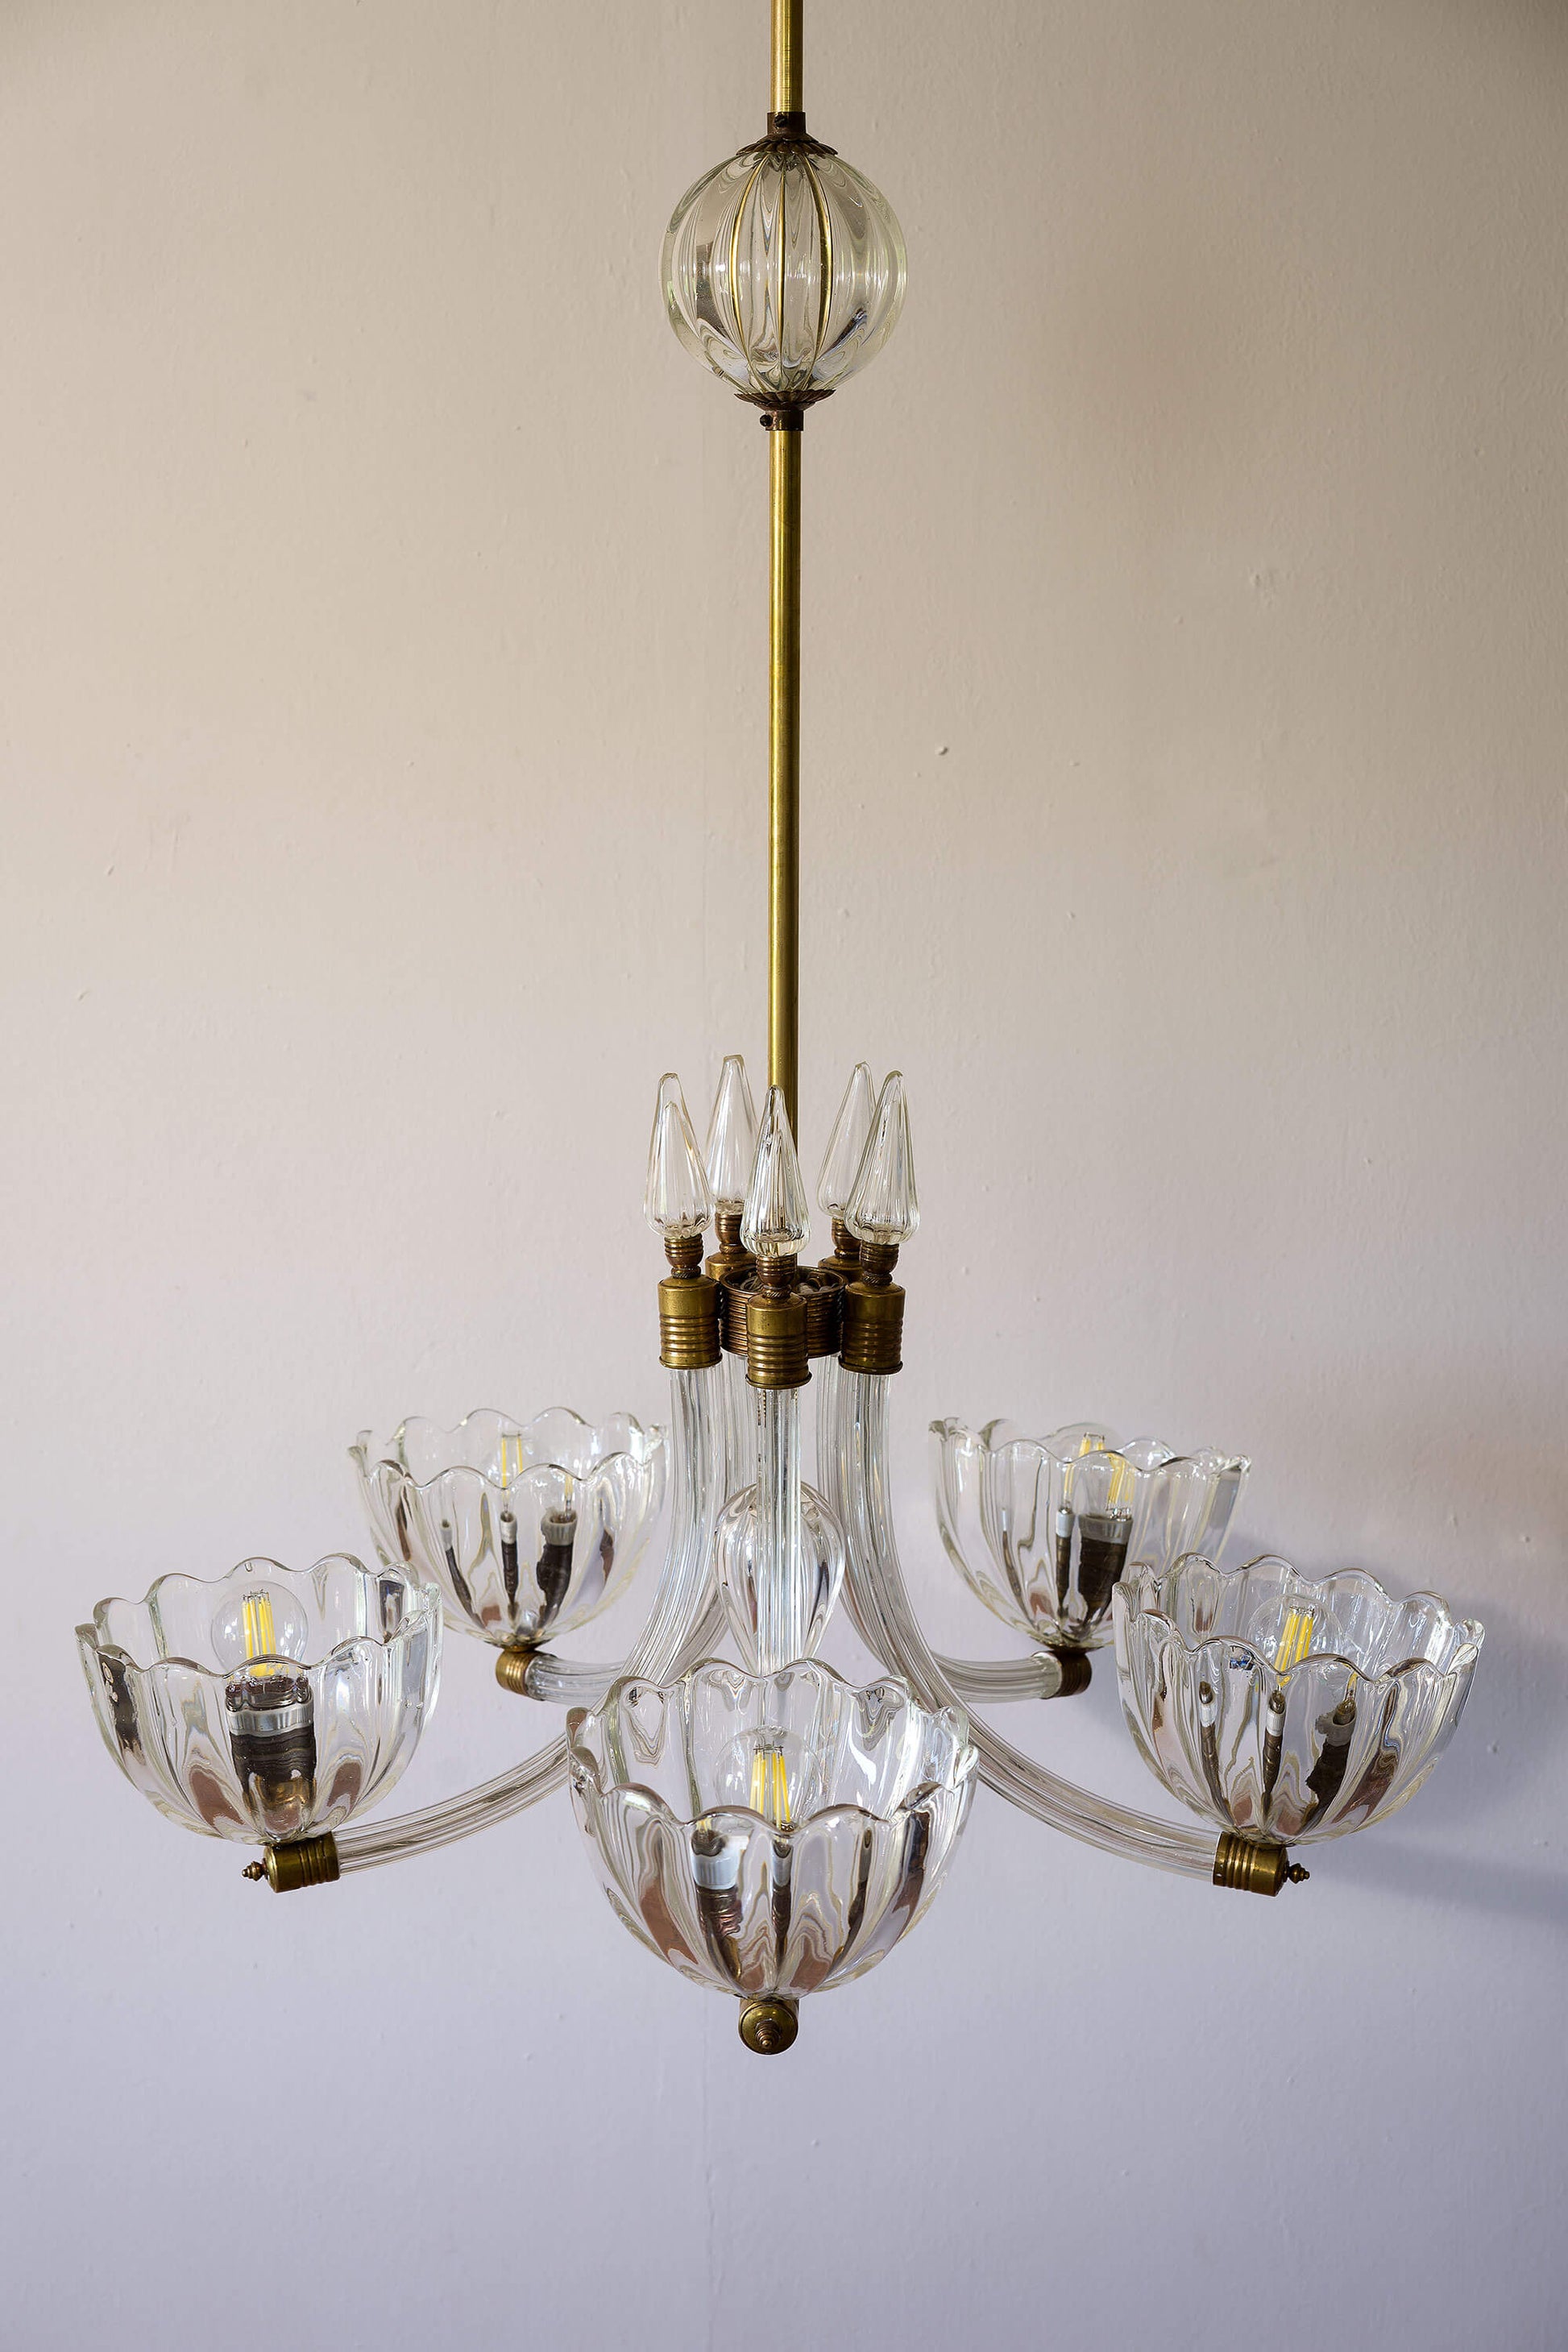 Lampadario italiano degli anni '40, creato dalla rinomata casa di design Barovier & Toso, con coppe in vetro sostenute da bracci elegantemente decorati con ottone. | Lo Stile Italiano